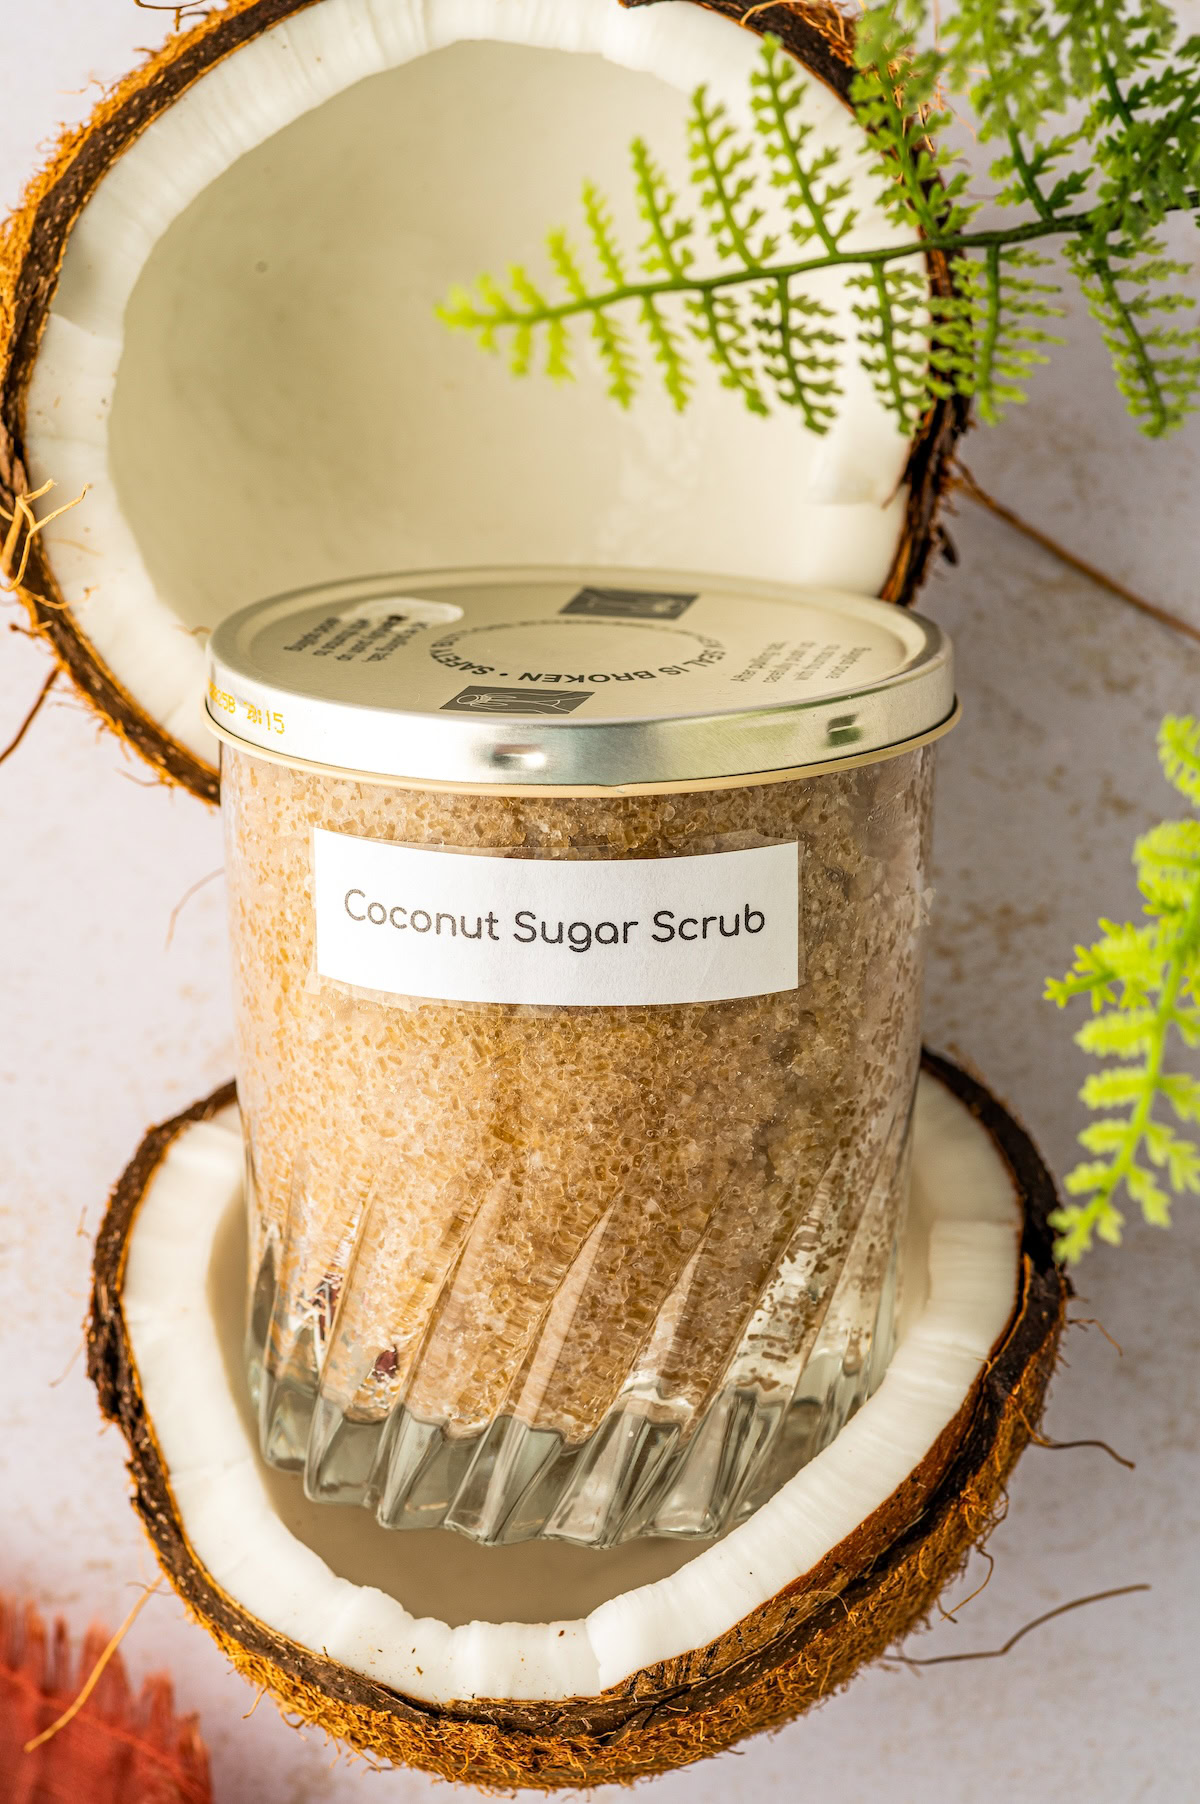 Coconut sugar scrub in a jar set inside a fresh coconut cut in half.